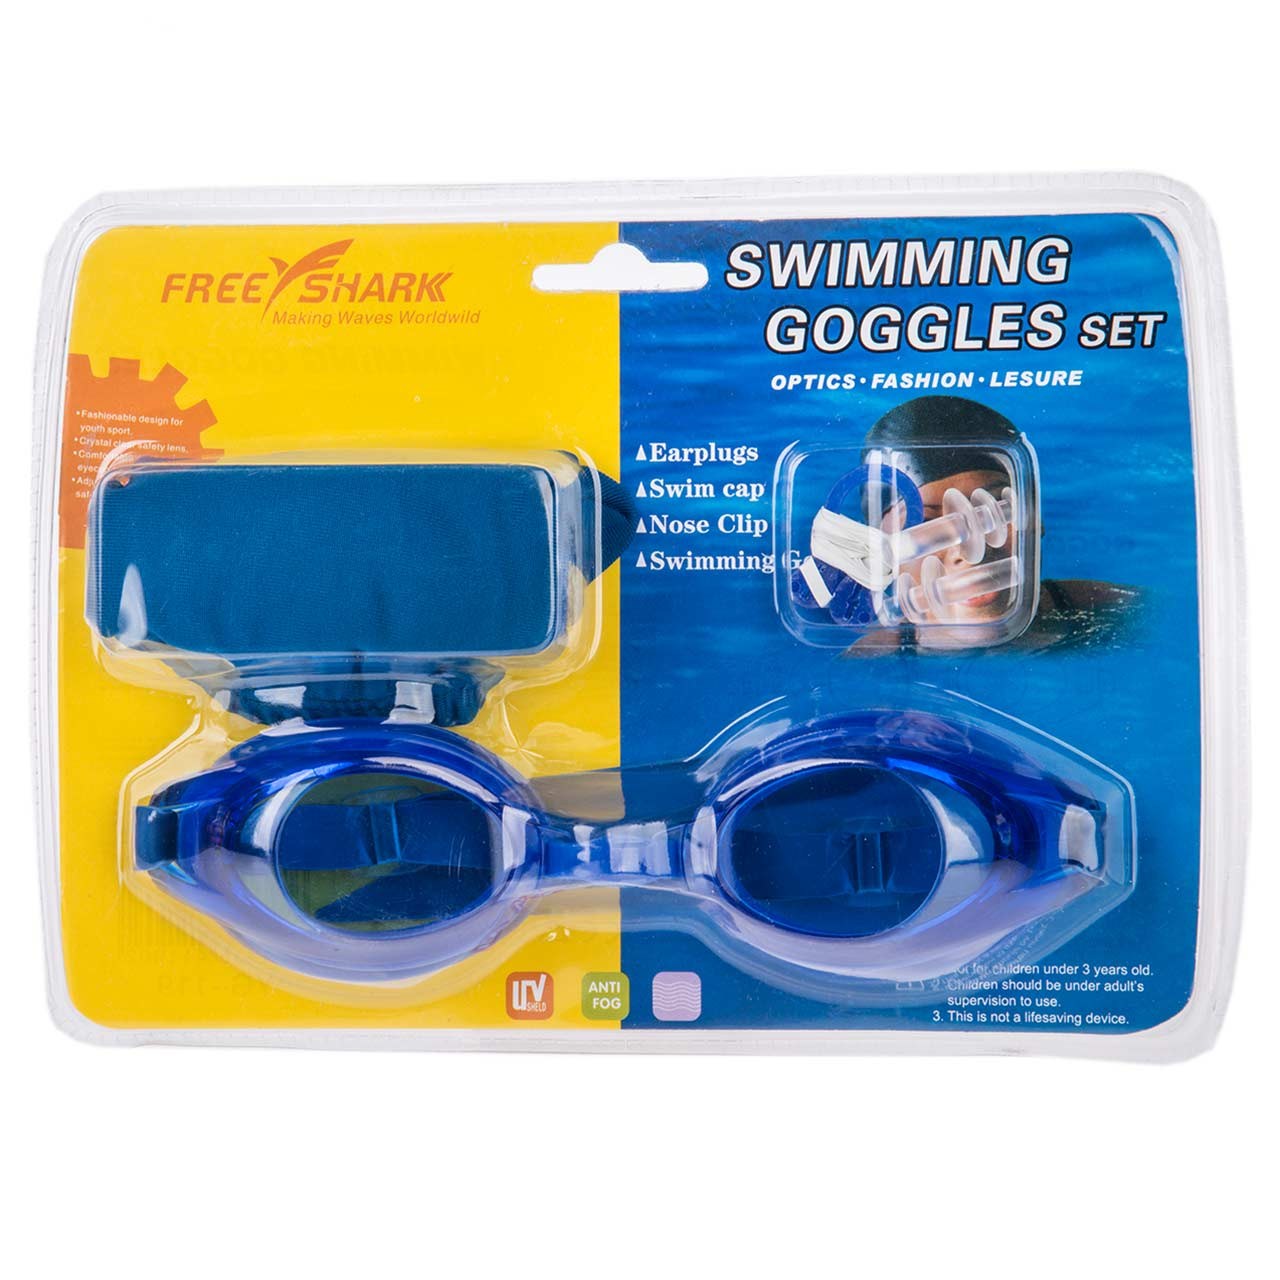 مجموعه عینک شنای فری شارک مدل YG-119